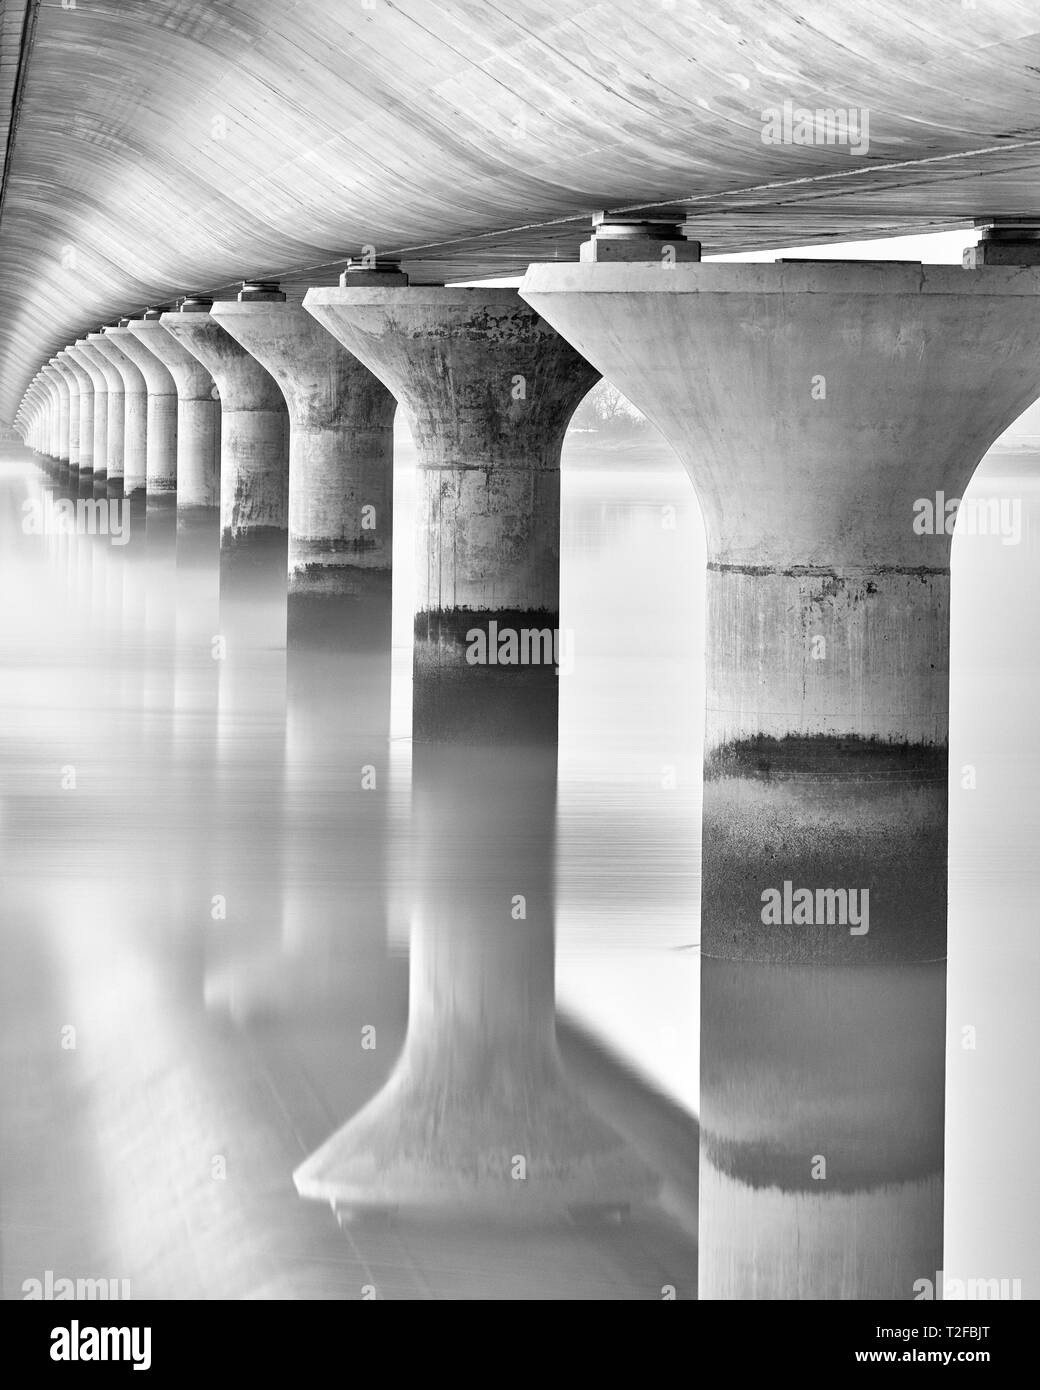 Ponte di Clackmannanshire. Immagine in bianco e nero della parte inferiore del ponte. La Scozia. Foto Stock